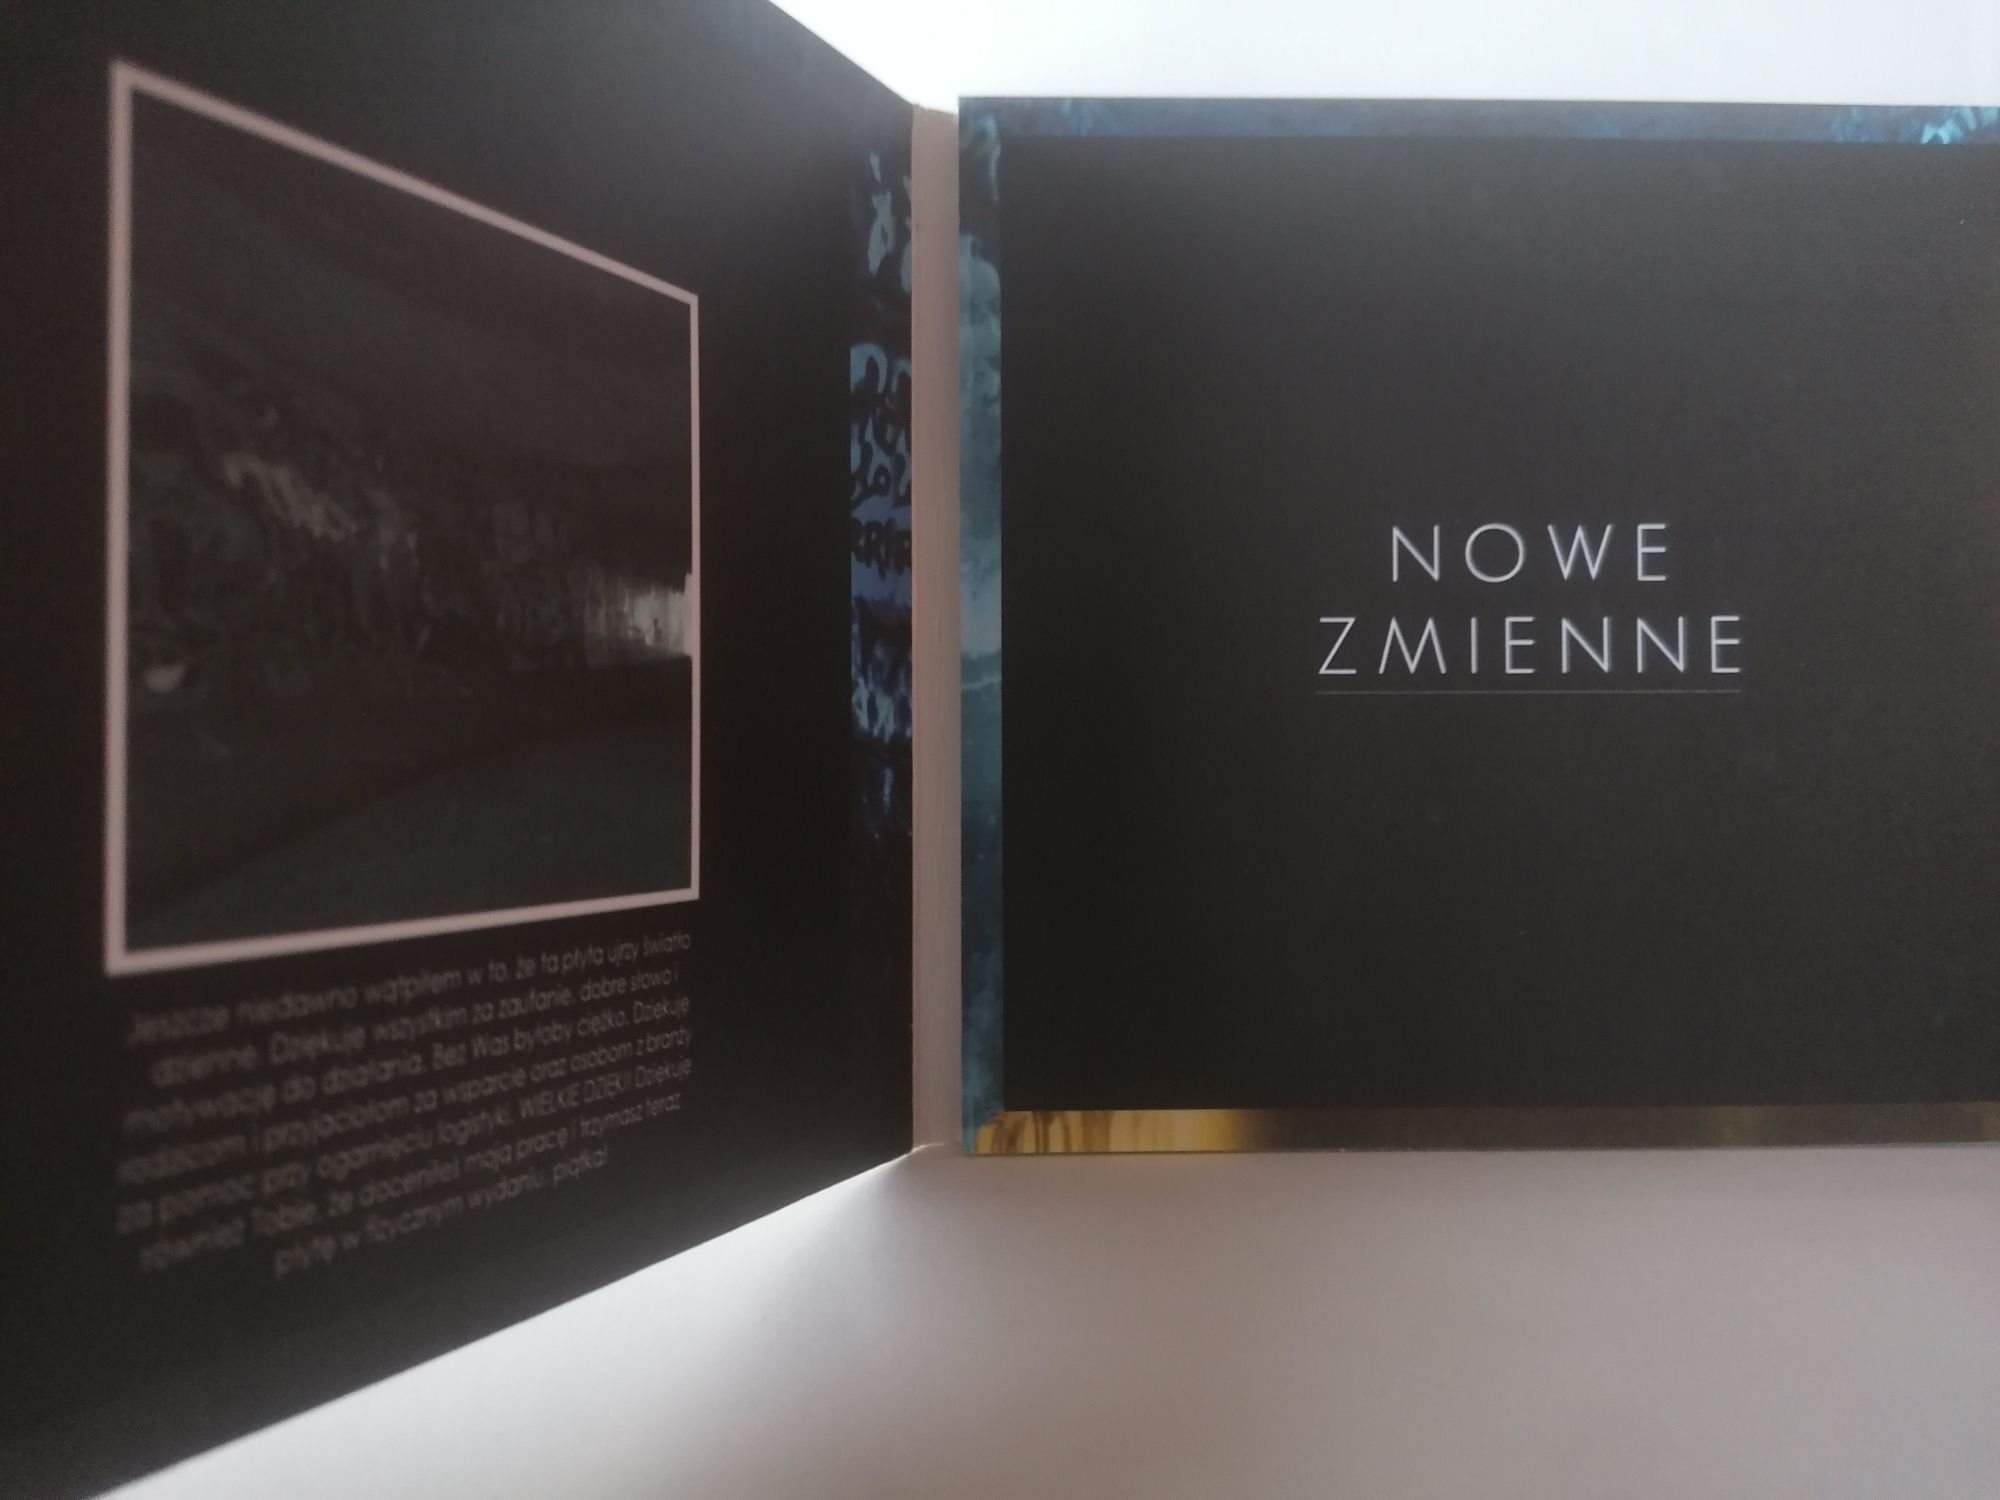 Efen - Nowe zmienne CD